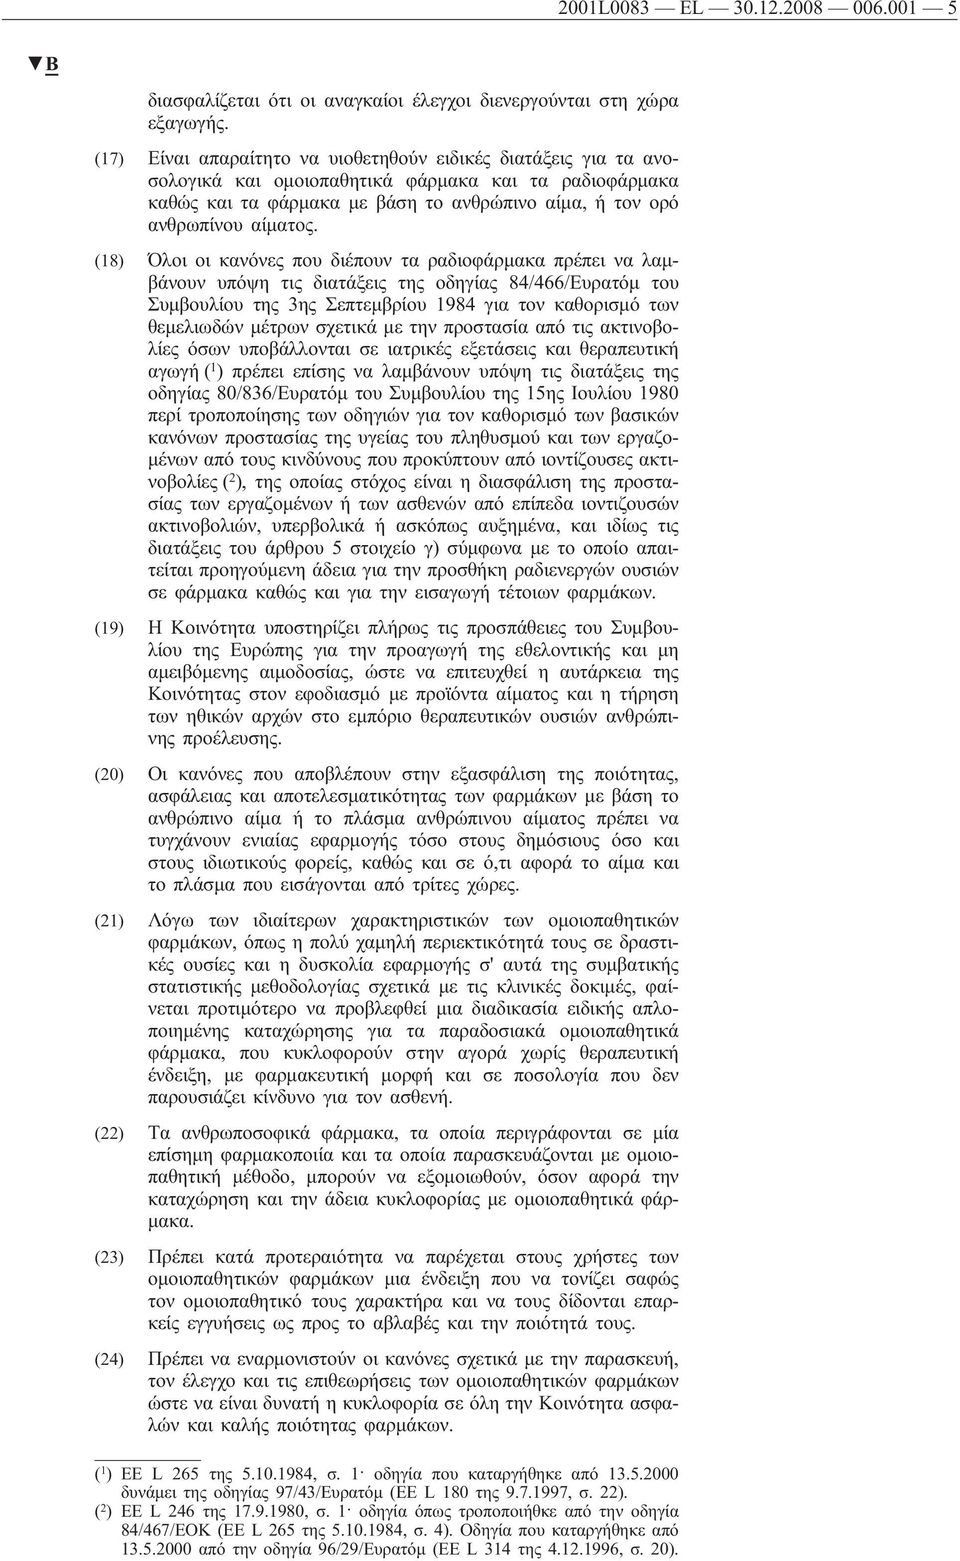 (18) Όλοι οι κανόνες που διέπουν τα ραδιοφάρμακα πρέπει να λαμβάνουν υπόψη τις διατάξεις της οδηγίας 84/466/Ευρατόμ του Συμβουλίου της 3ης Σεπτεμβρίου 1984 για τον καθορισμό των θεμελιωδών μέτρων